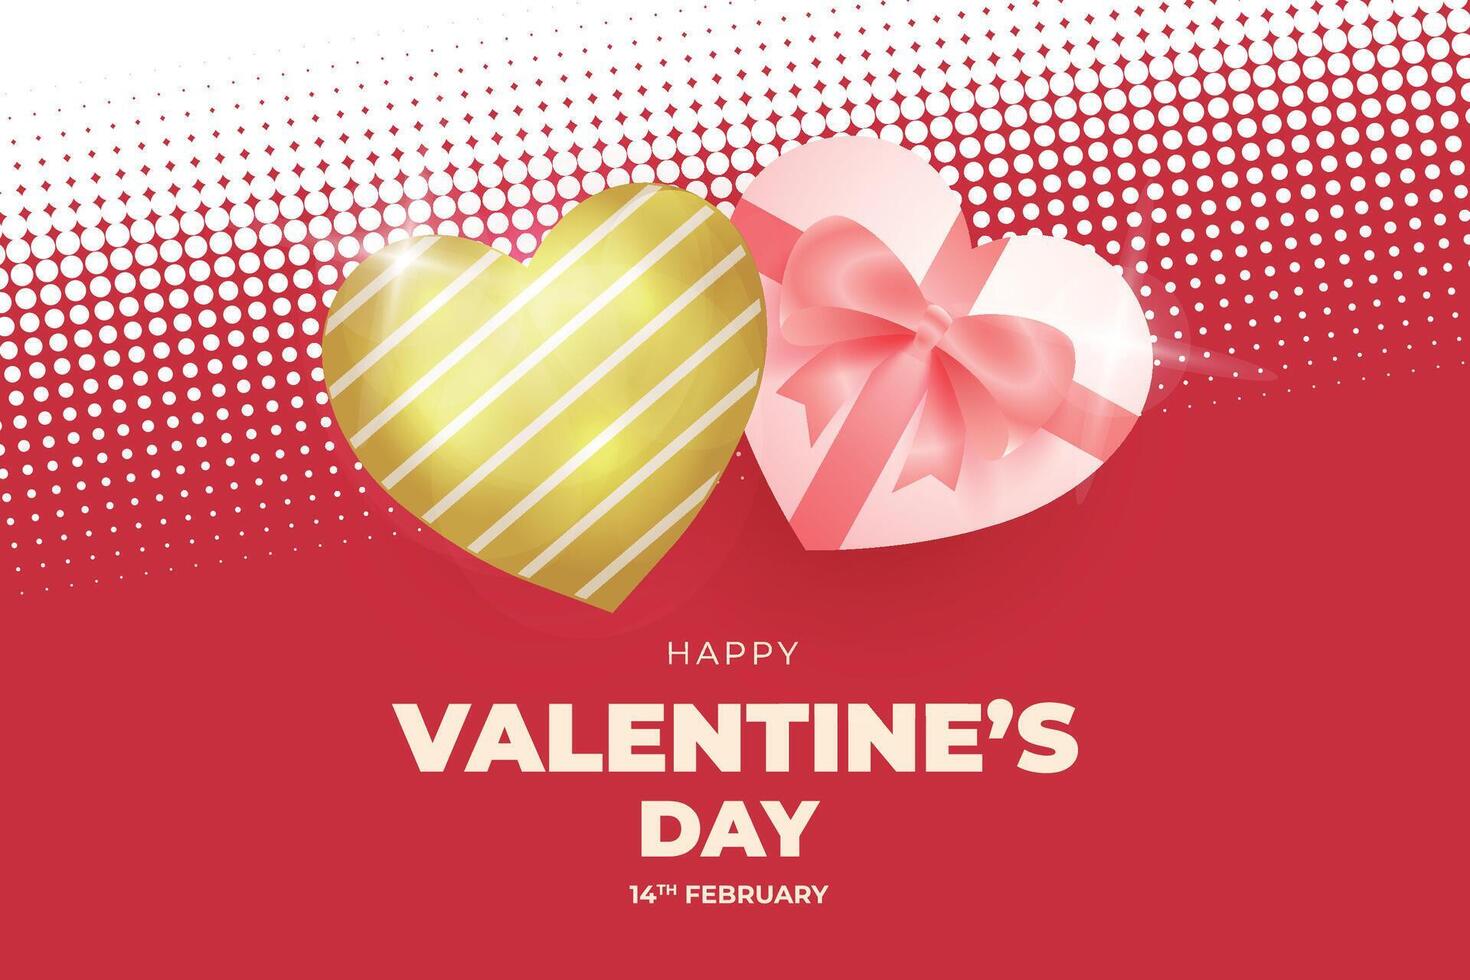 San Valentín día antecedentes con corazones y regalo cajas vector